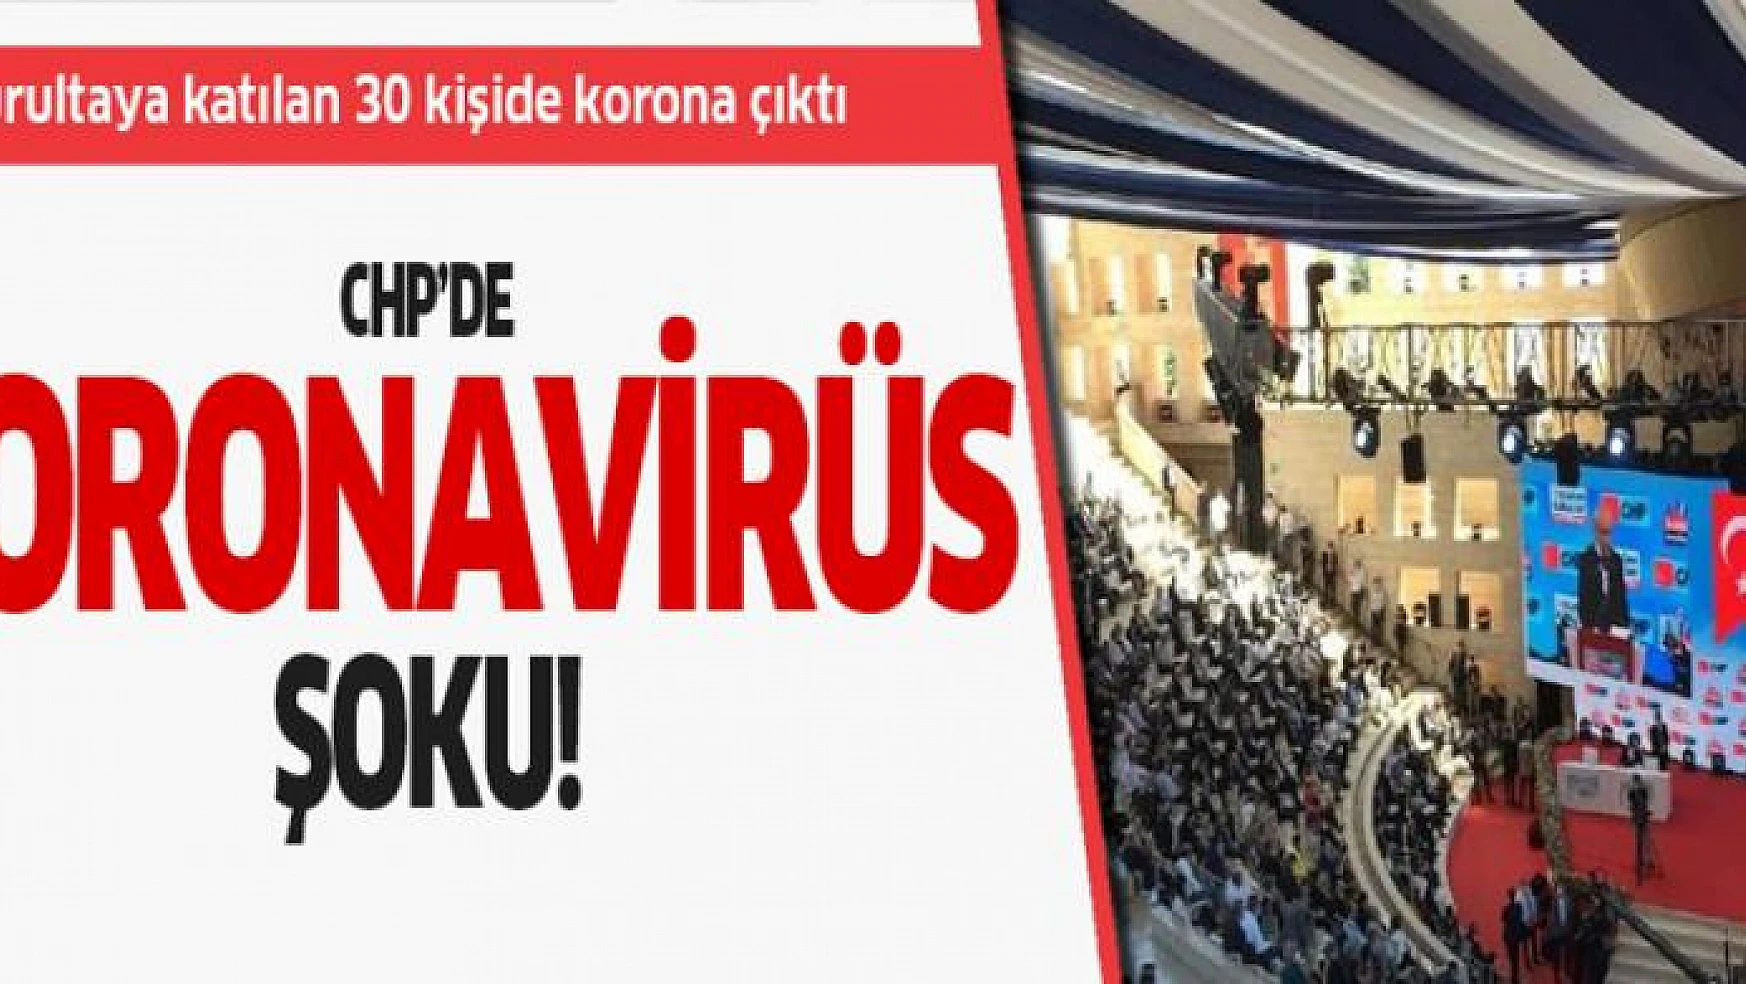 CHP'de koronavirüs şoku! Kurultaya katılan 30 kişide korona çıktı